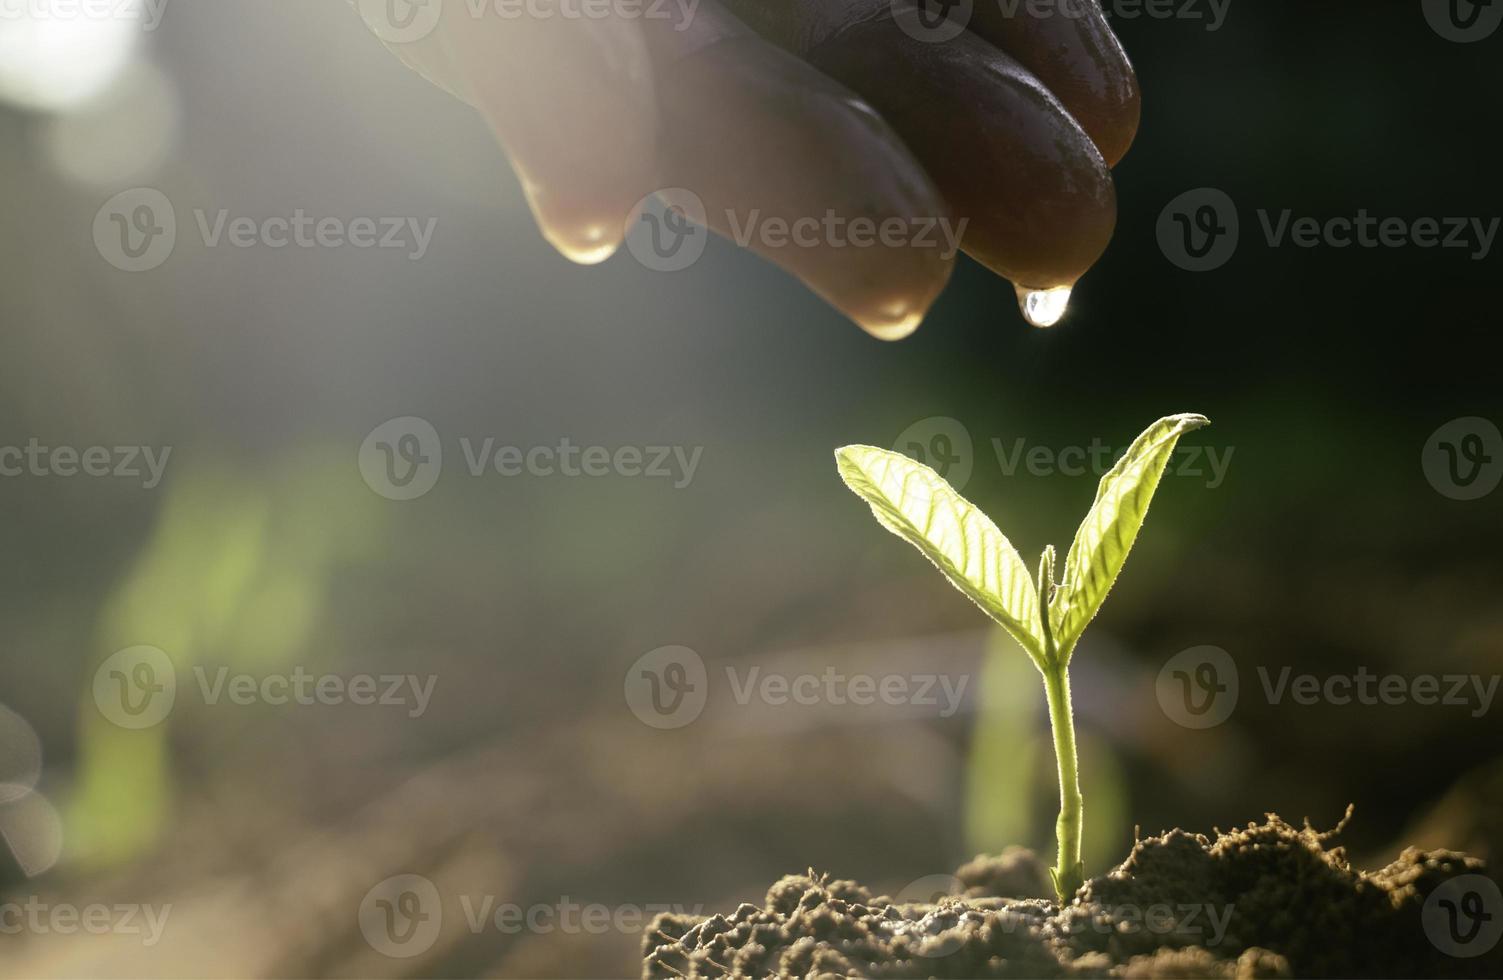 toucher à la main est une plante en croissance, jeune plante dans la lumière du matin sur fond de sol. petites plantes sur le sol au printemps, photo fraîche et idée de concept d'agriculture.